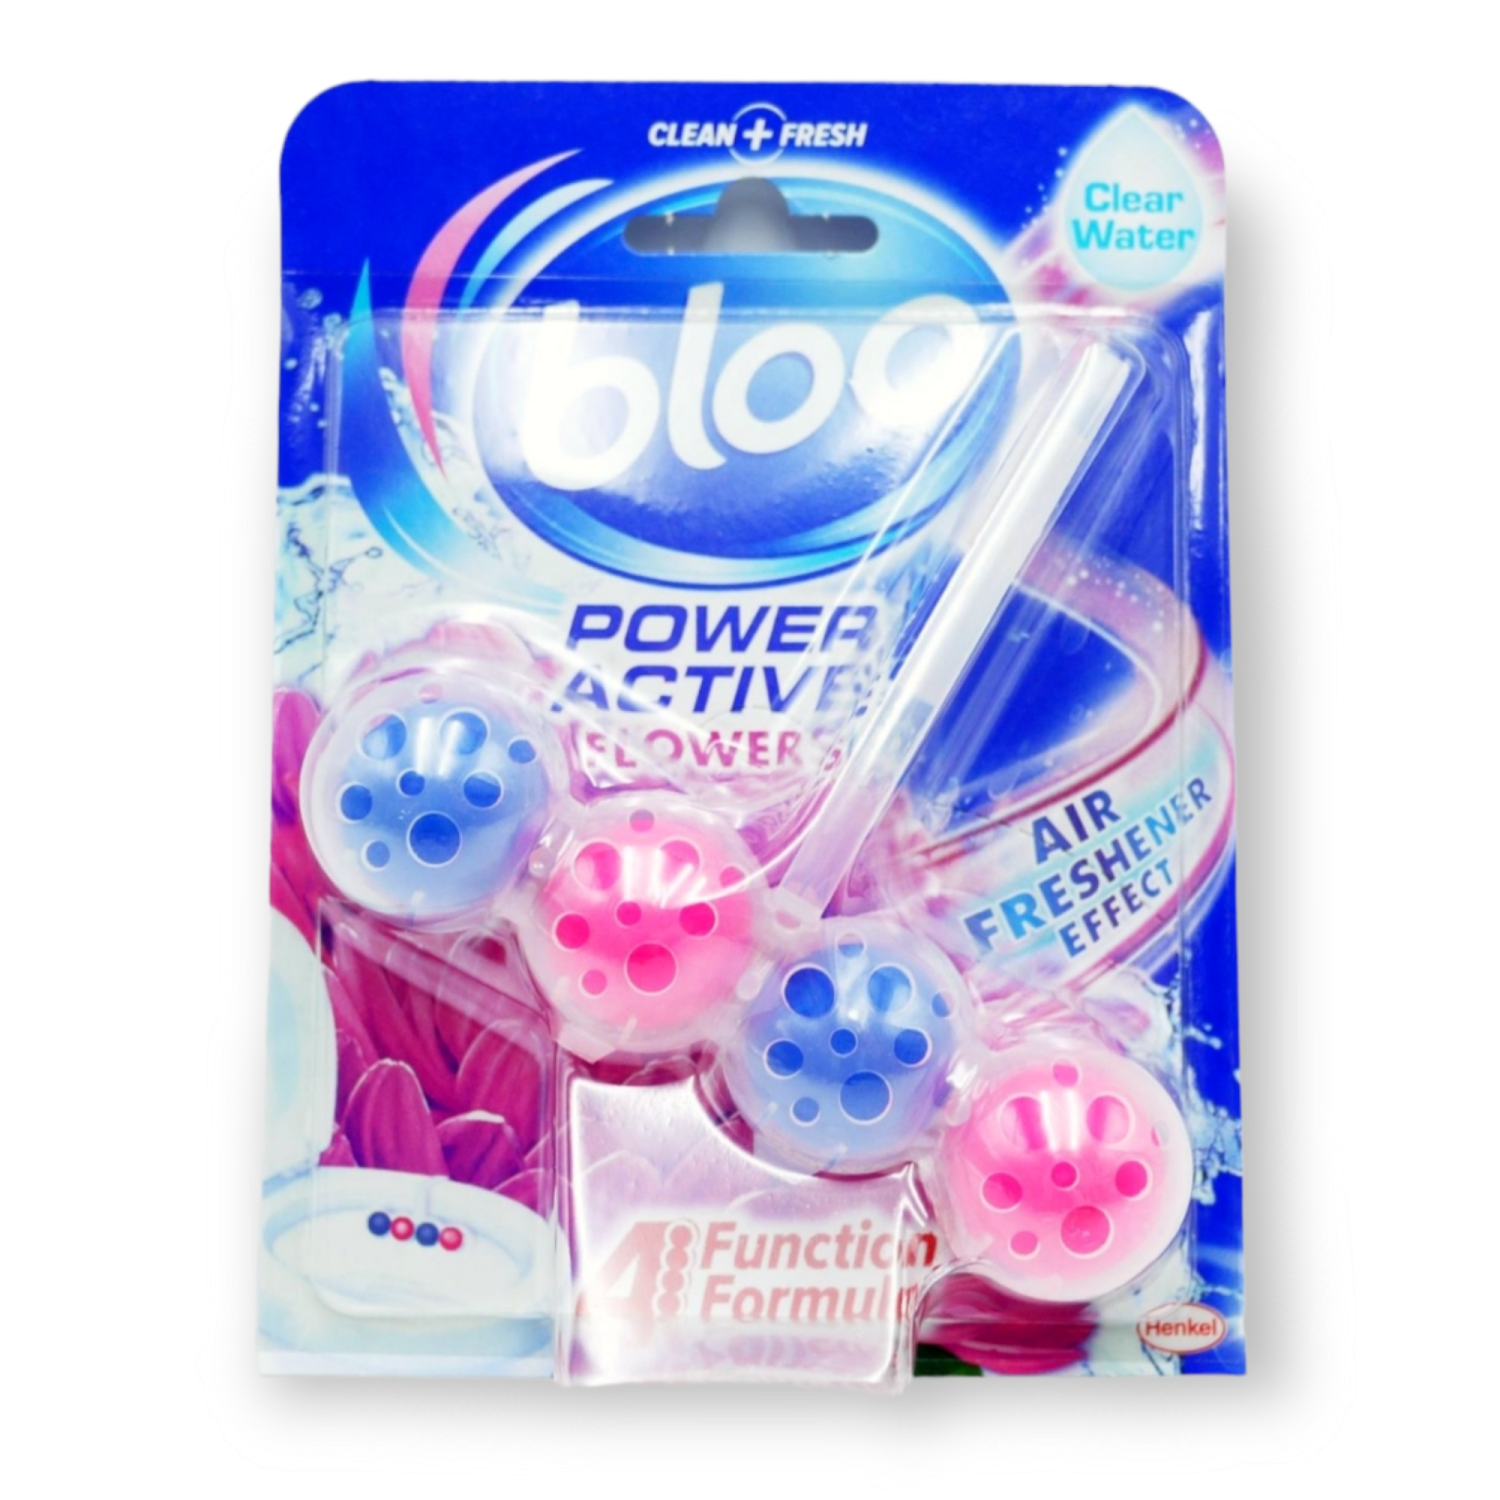 Bloo Power Activ Flower Toilet Rim 50g